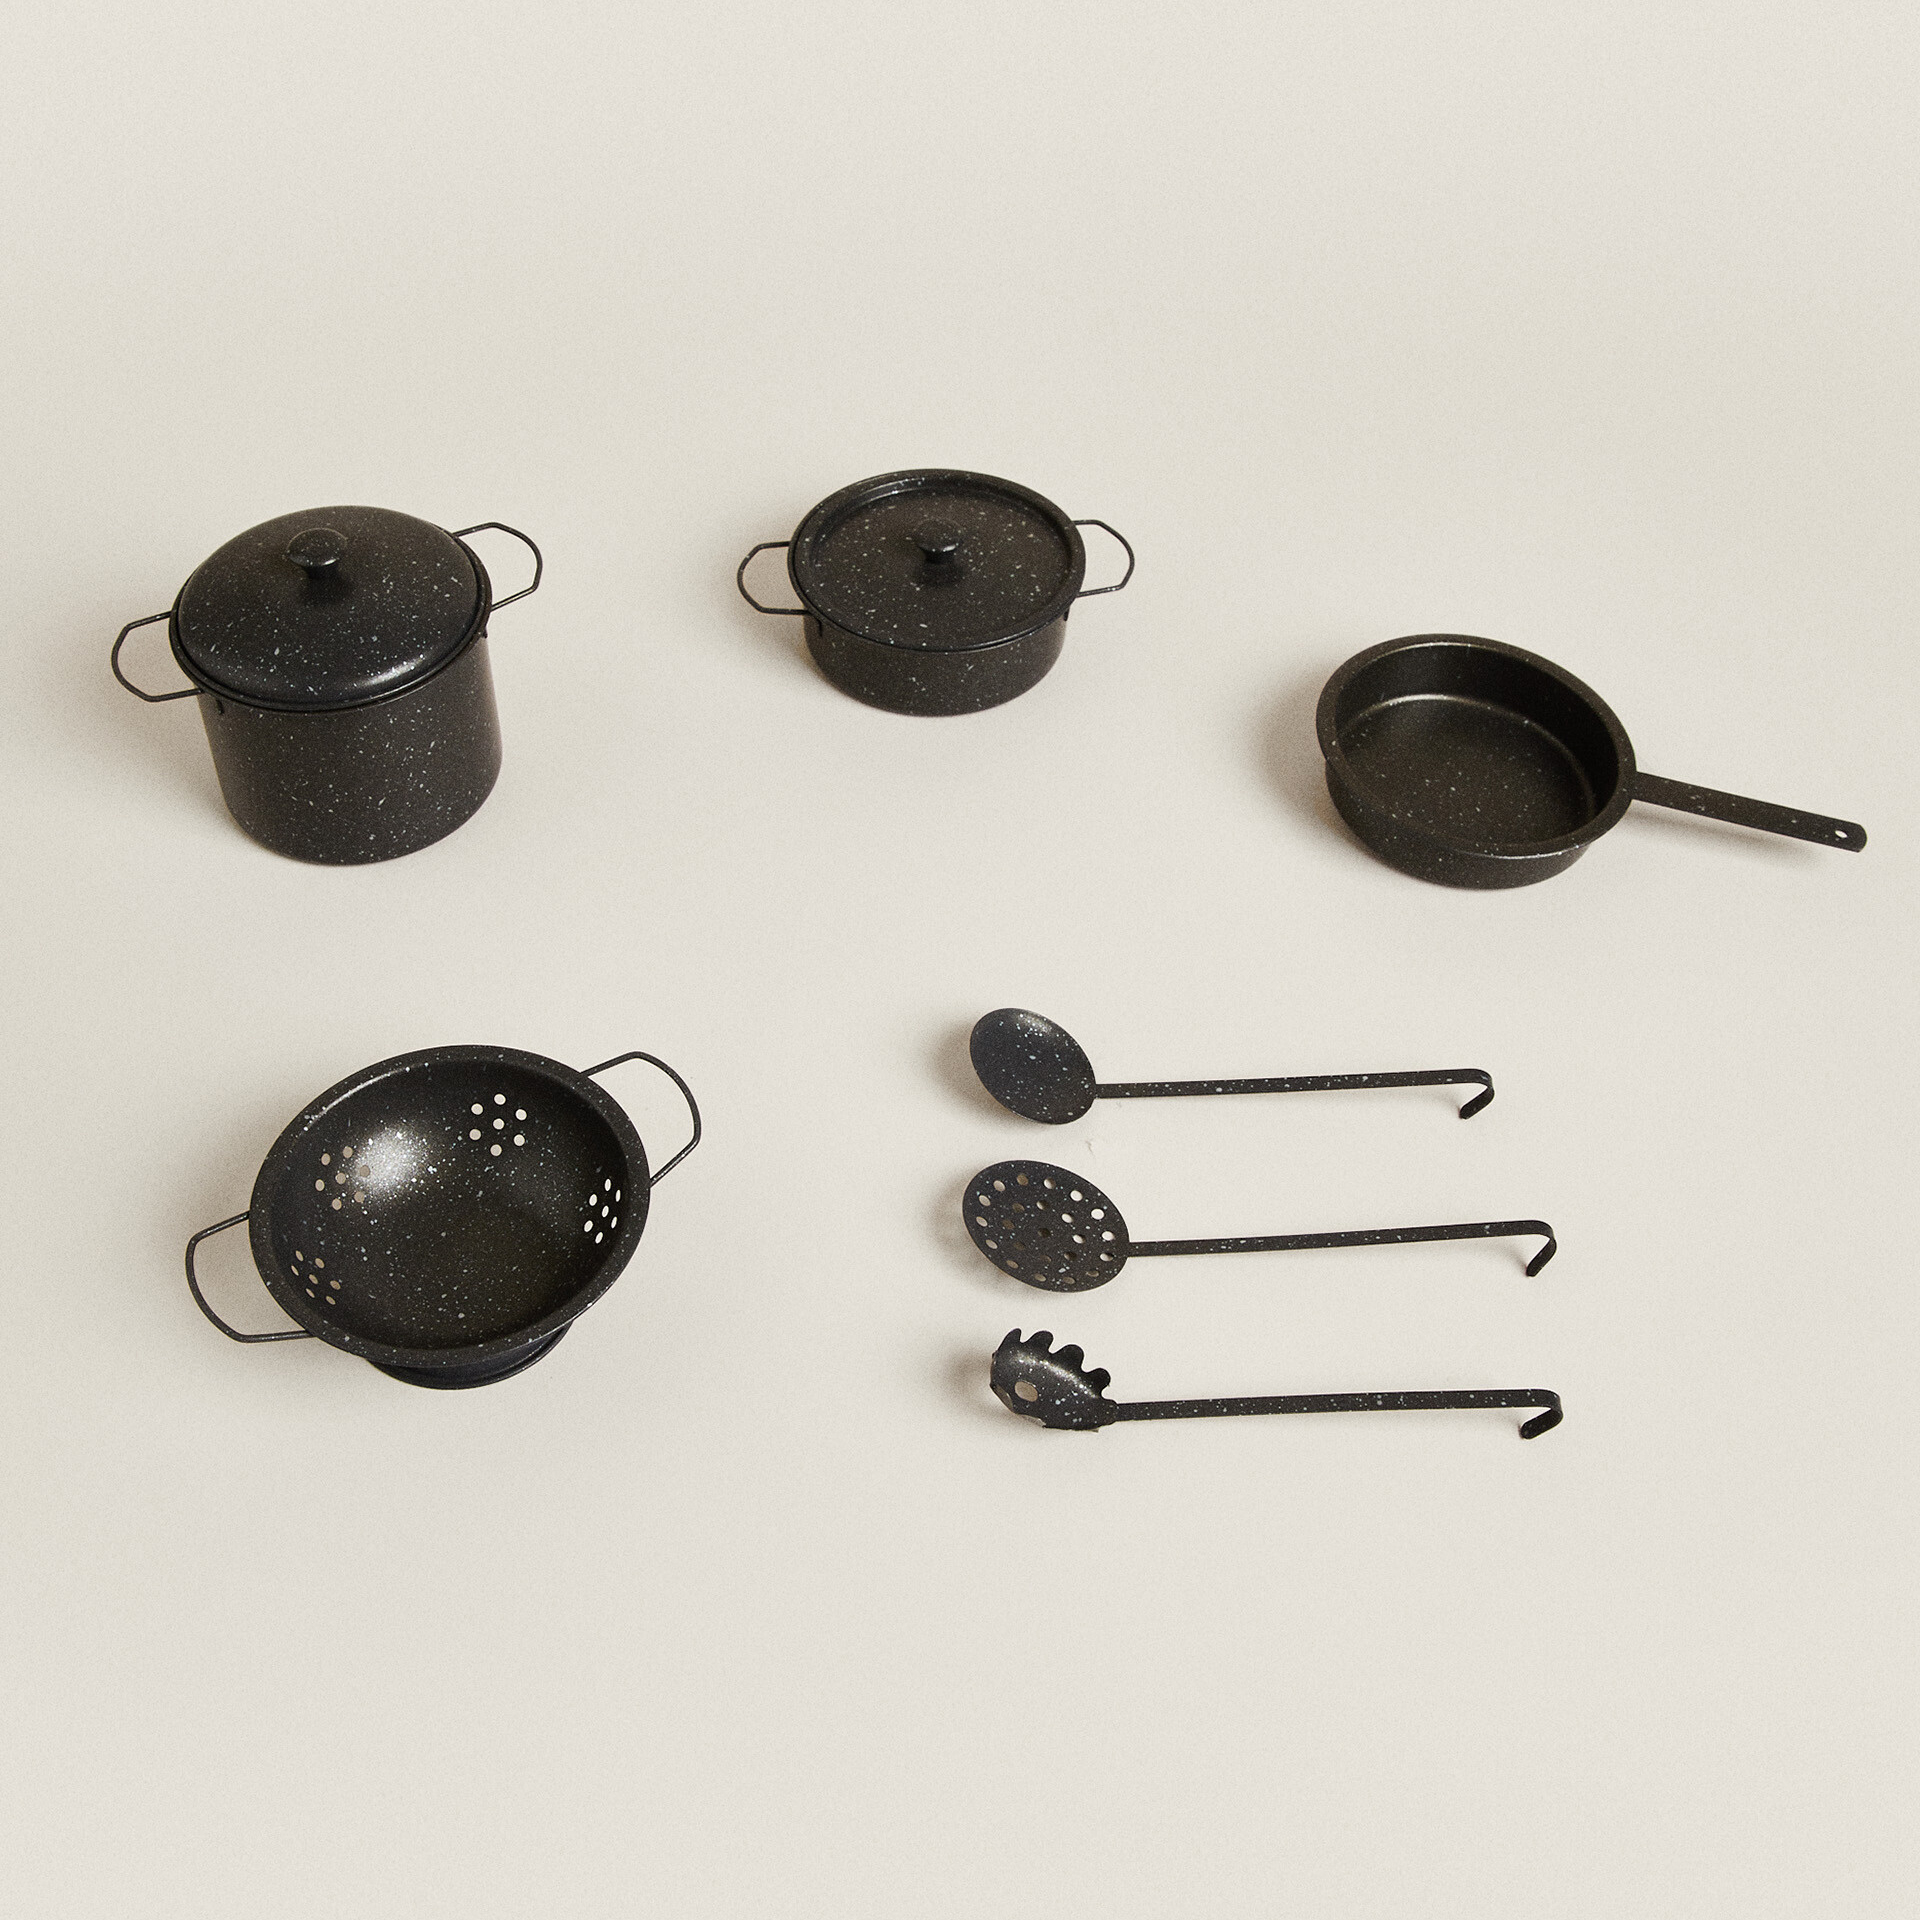 Детский набор кухонной посуды Zara Home, черный набор кухонной посуды для ролевых игр имитация кухонной утвари детская игрушка пазл развивающая игра для мальчиков